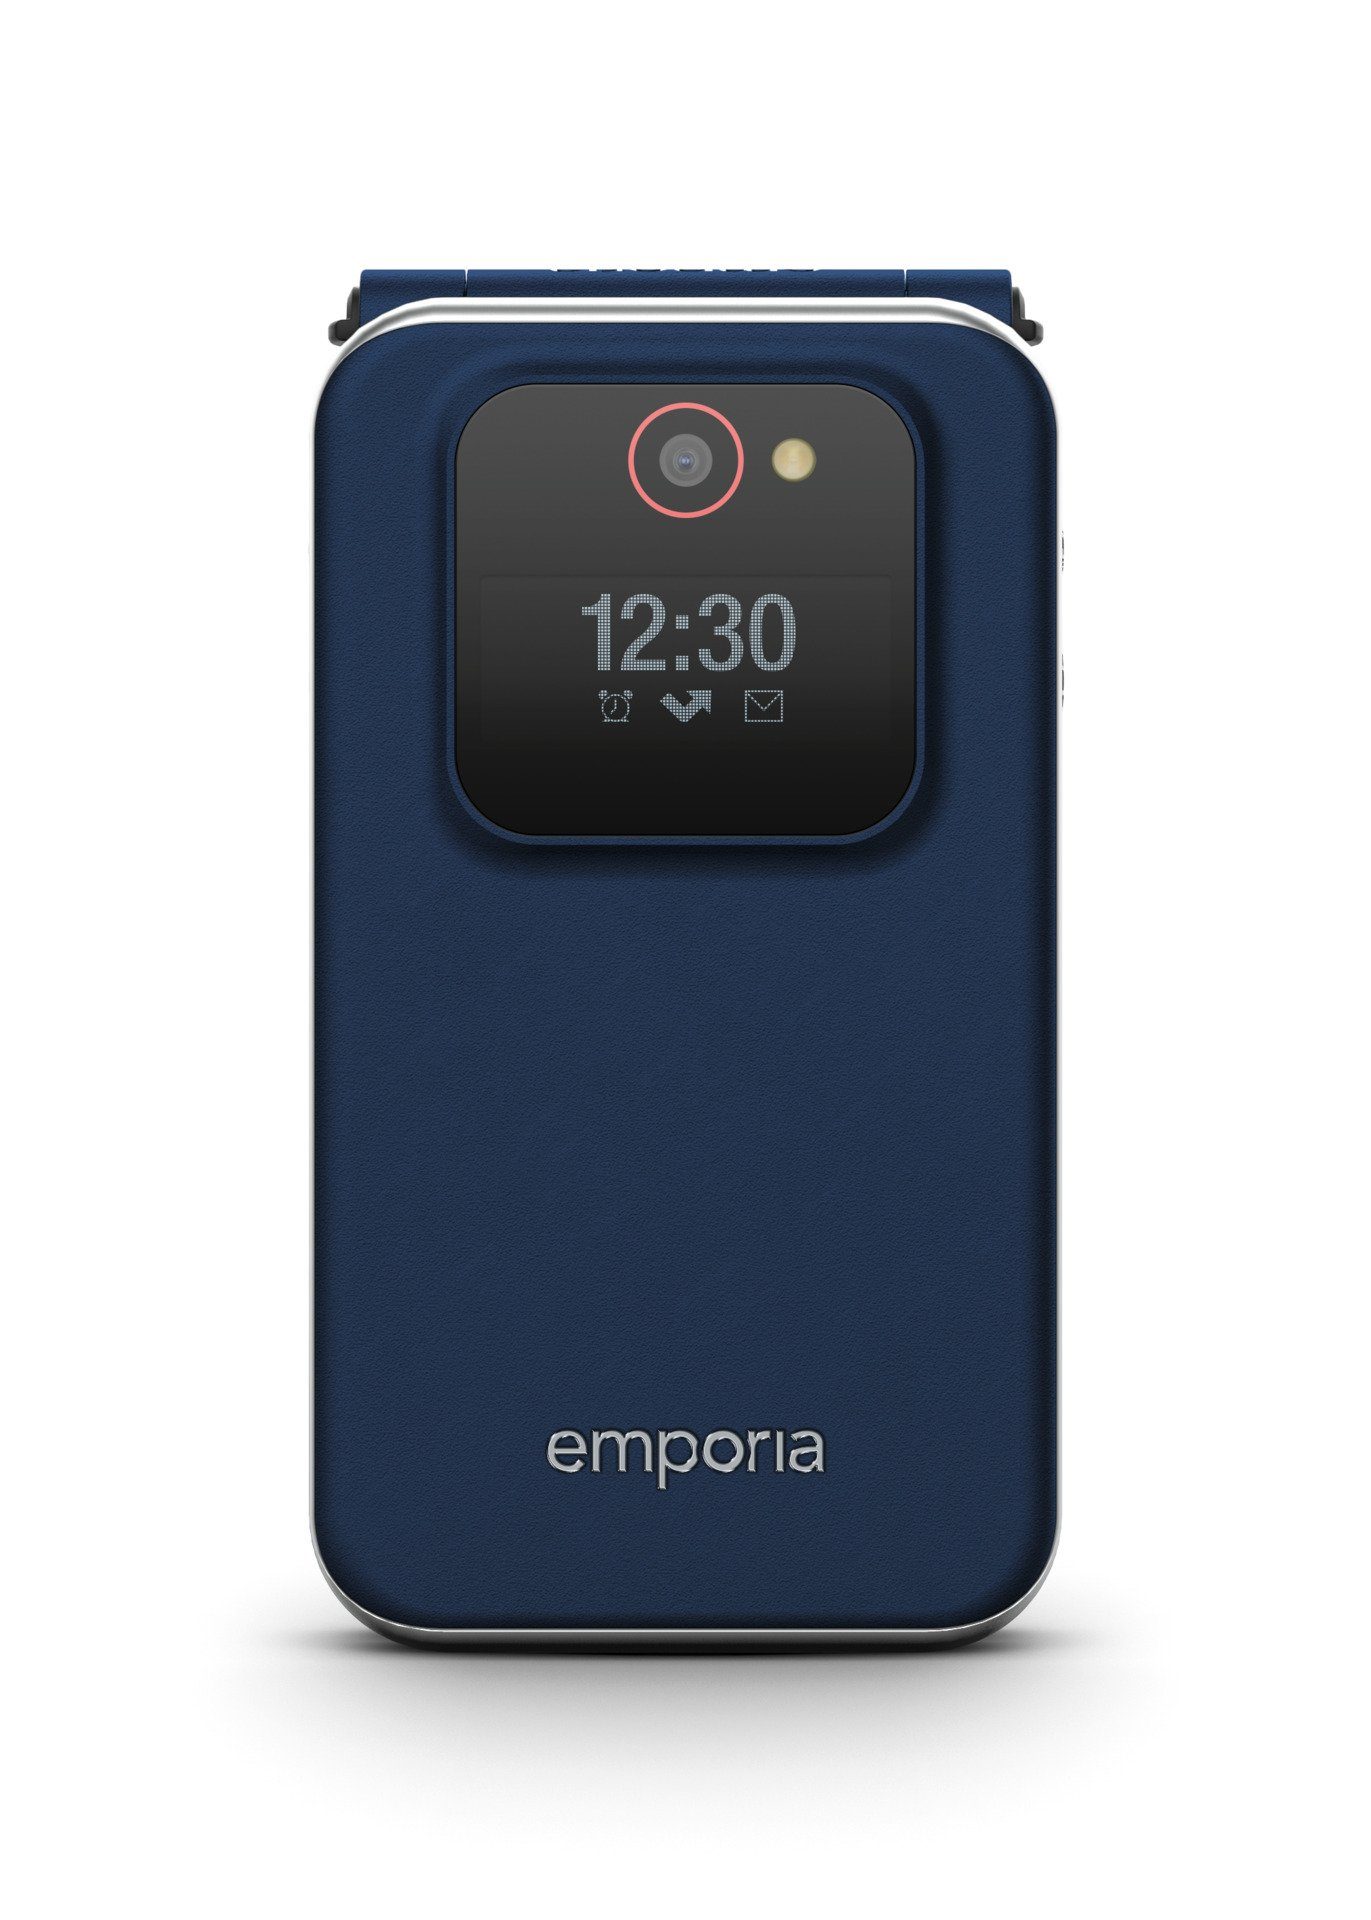 Emporia (1,1) 2,8 Speicherplatz), cm (2,8) / (7,1 Außendisplay cm cm/2,8 Innendisplay GB 0,128 JOY V228-2G 7,1 Smartphone Zoll,